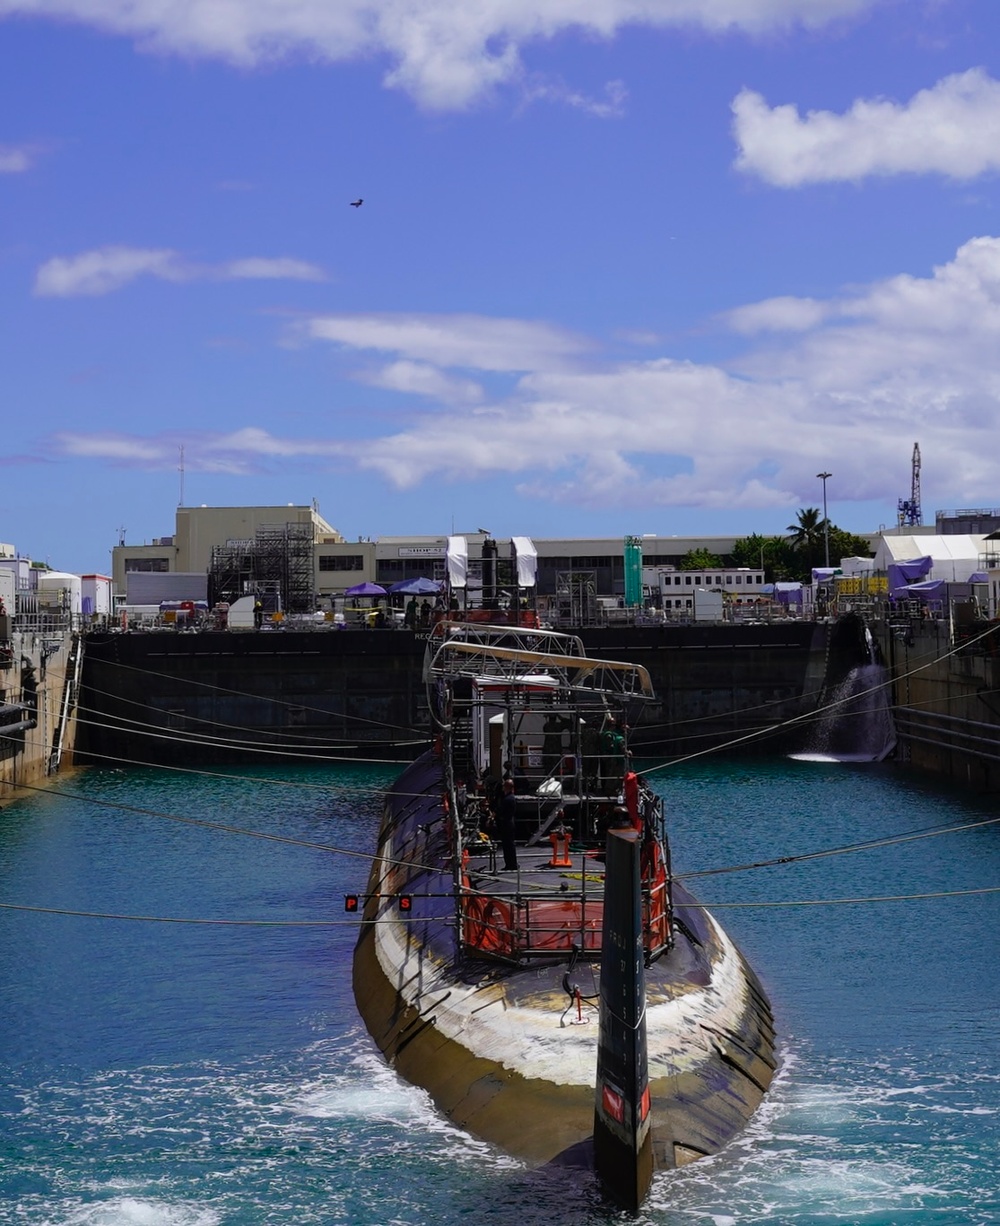 USS Colorado Enters Pearl Harbor Dry Dock